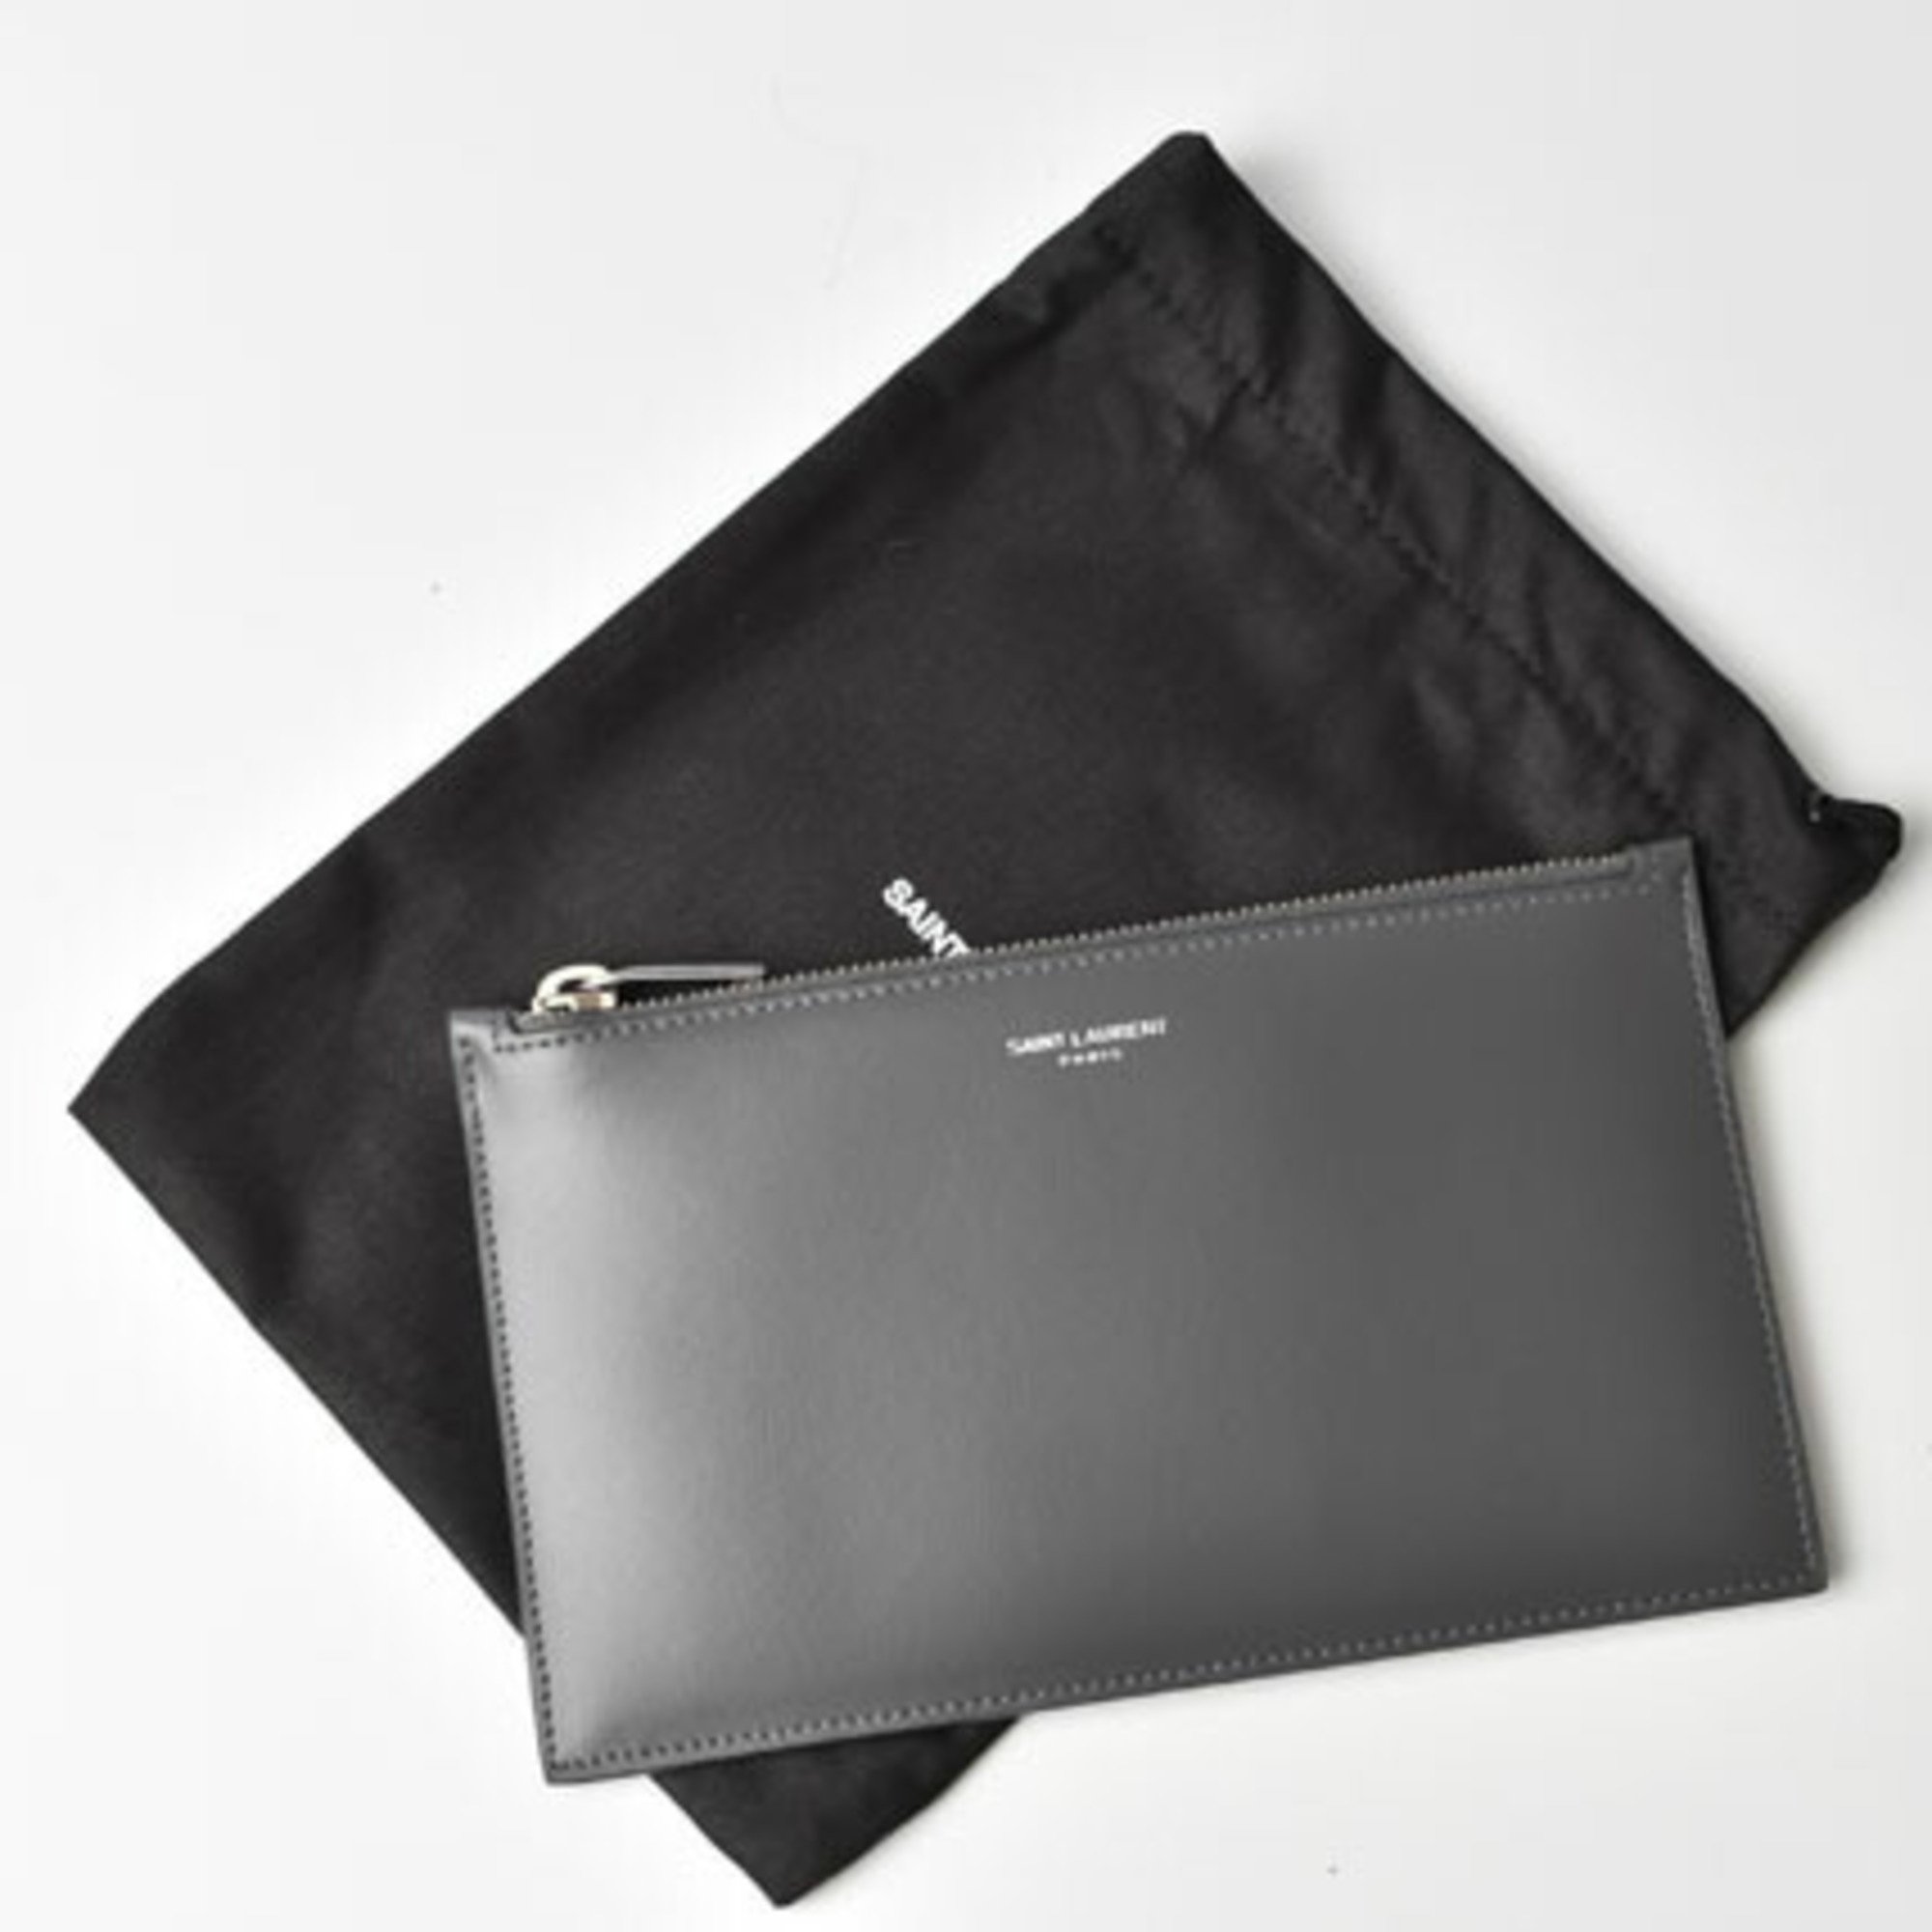 Saint Laurent Paris Flap Pouch Clutch Bag SAINT LAURENT Zip STORM Gray 635097 1JB0E 1112